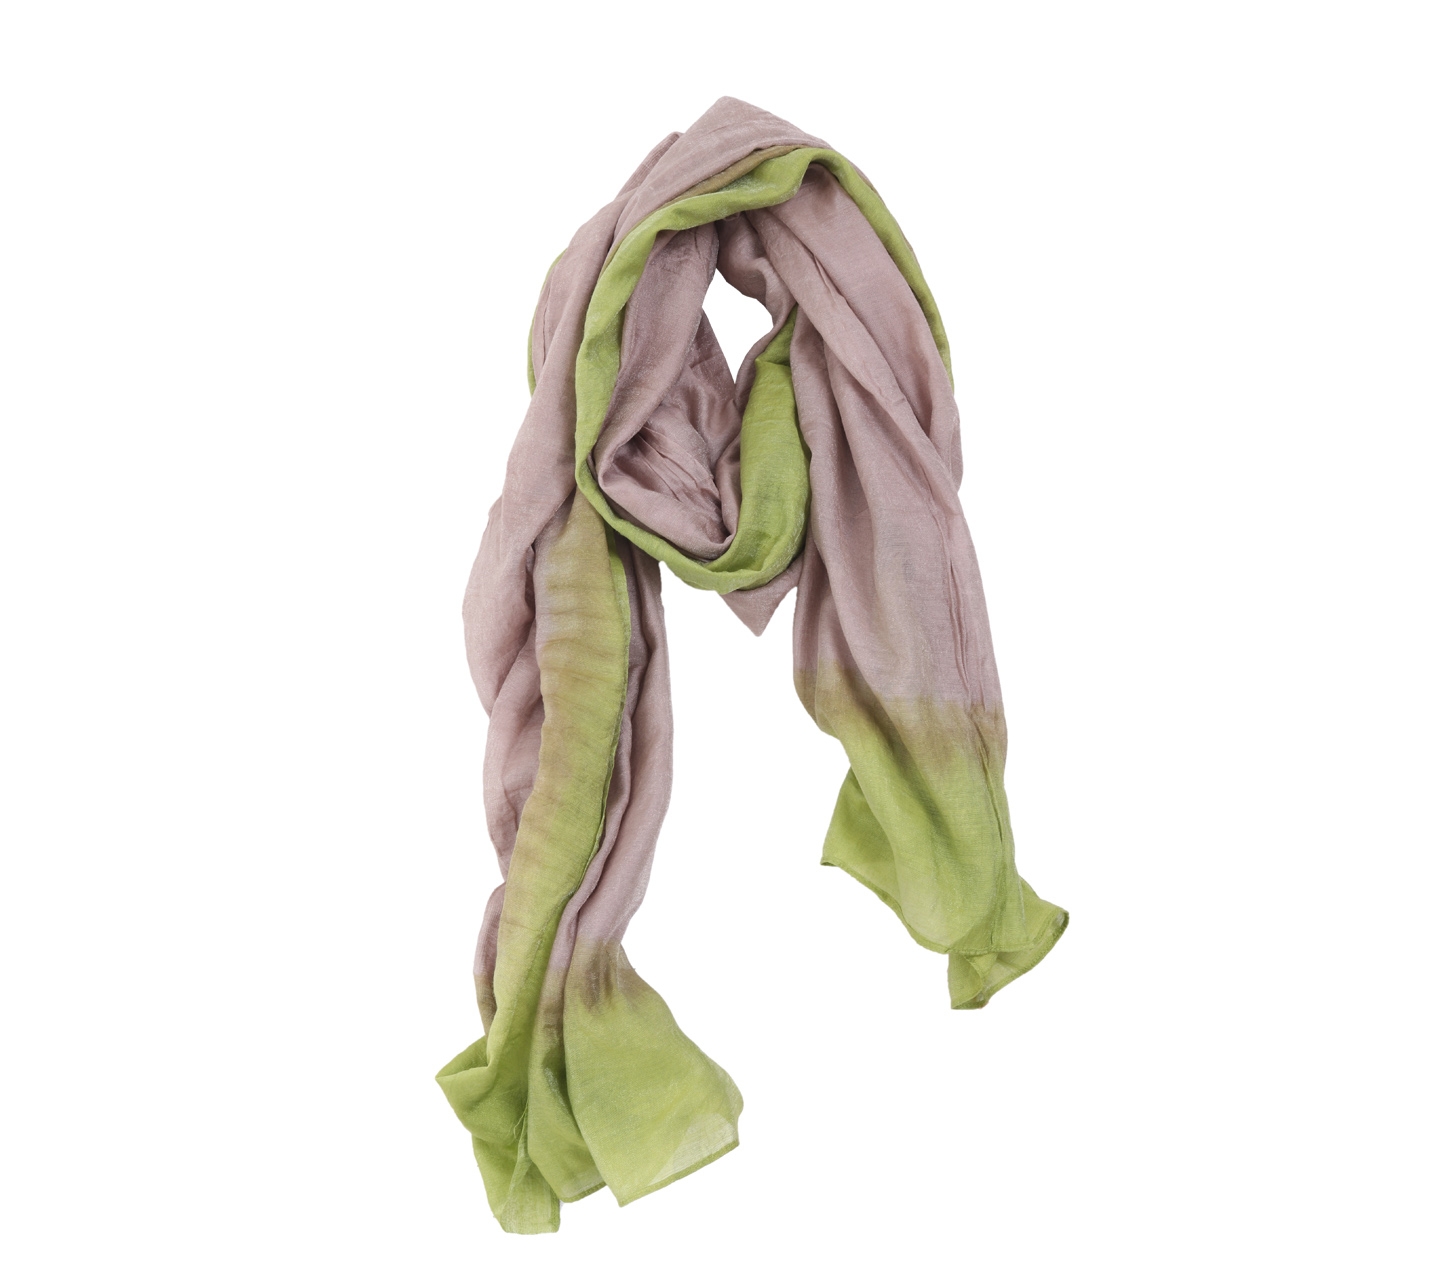 Dian pelangi green taupe scarf